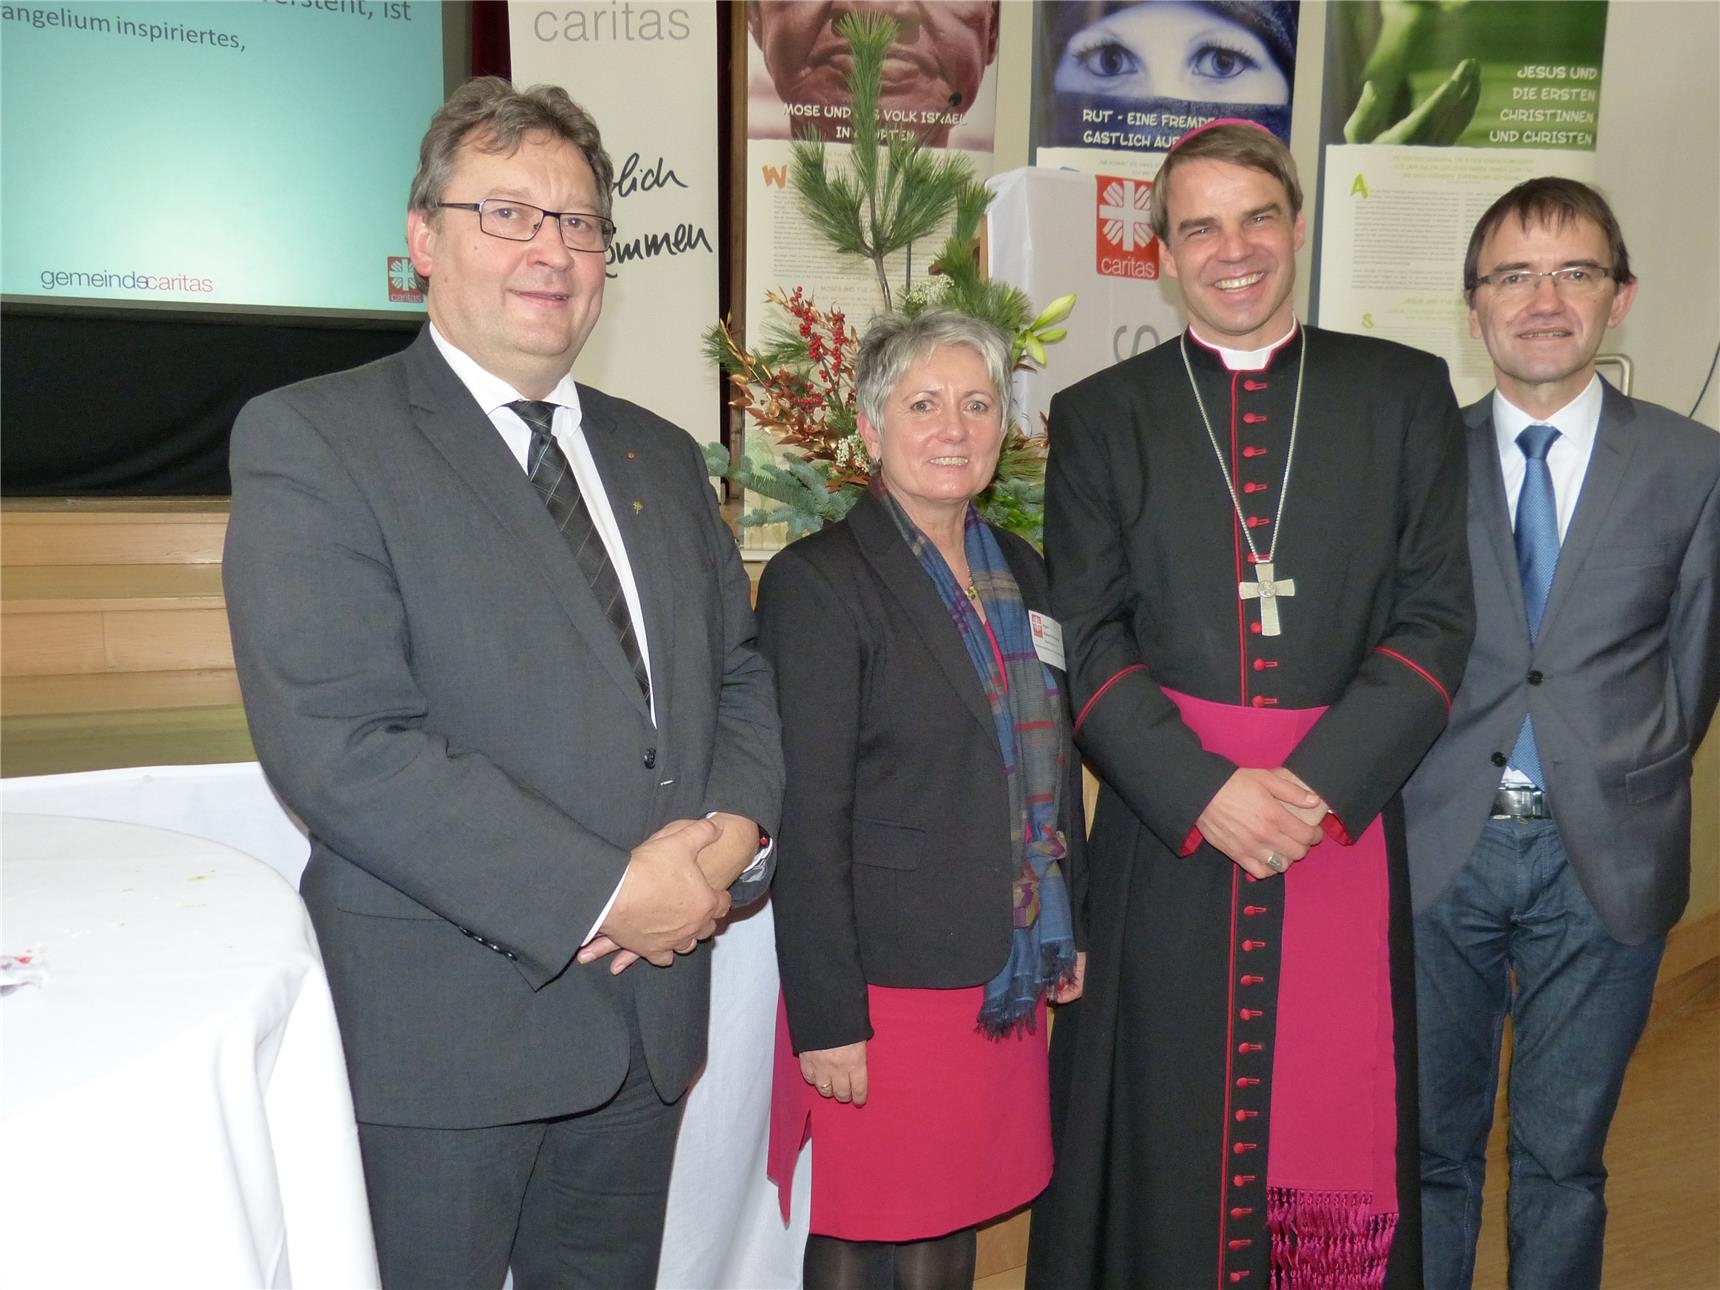 Bischof Stefan Oster (3.v.l.) mit Diakon Niederländer, Ingrid Aldozo-Entholzer von der Gemeindecaritas und Caritas-Direktor Michael Endres (Wildfeuer)